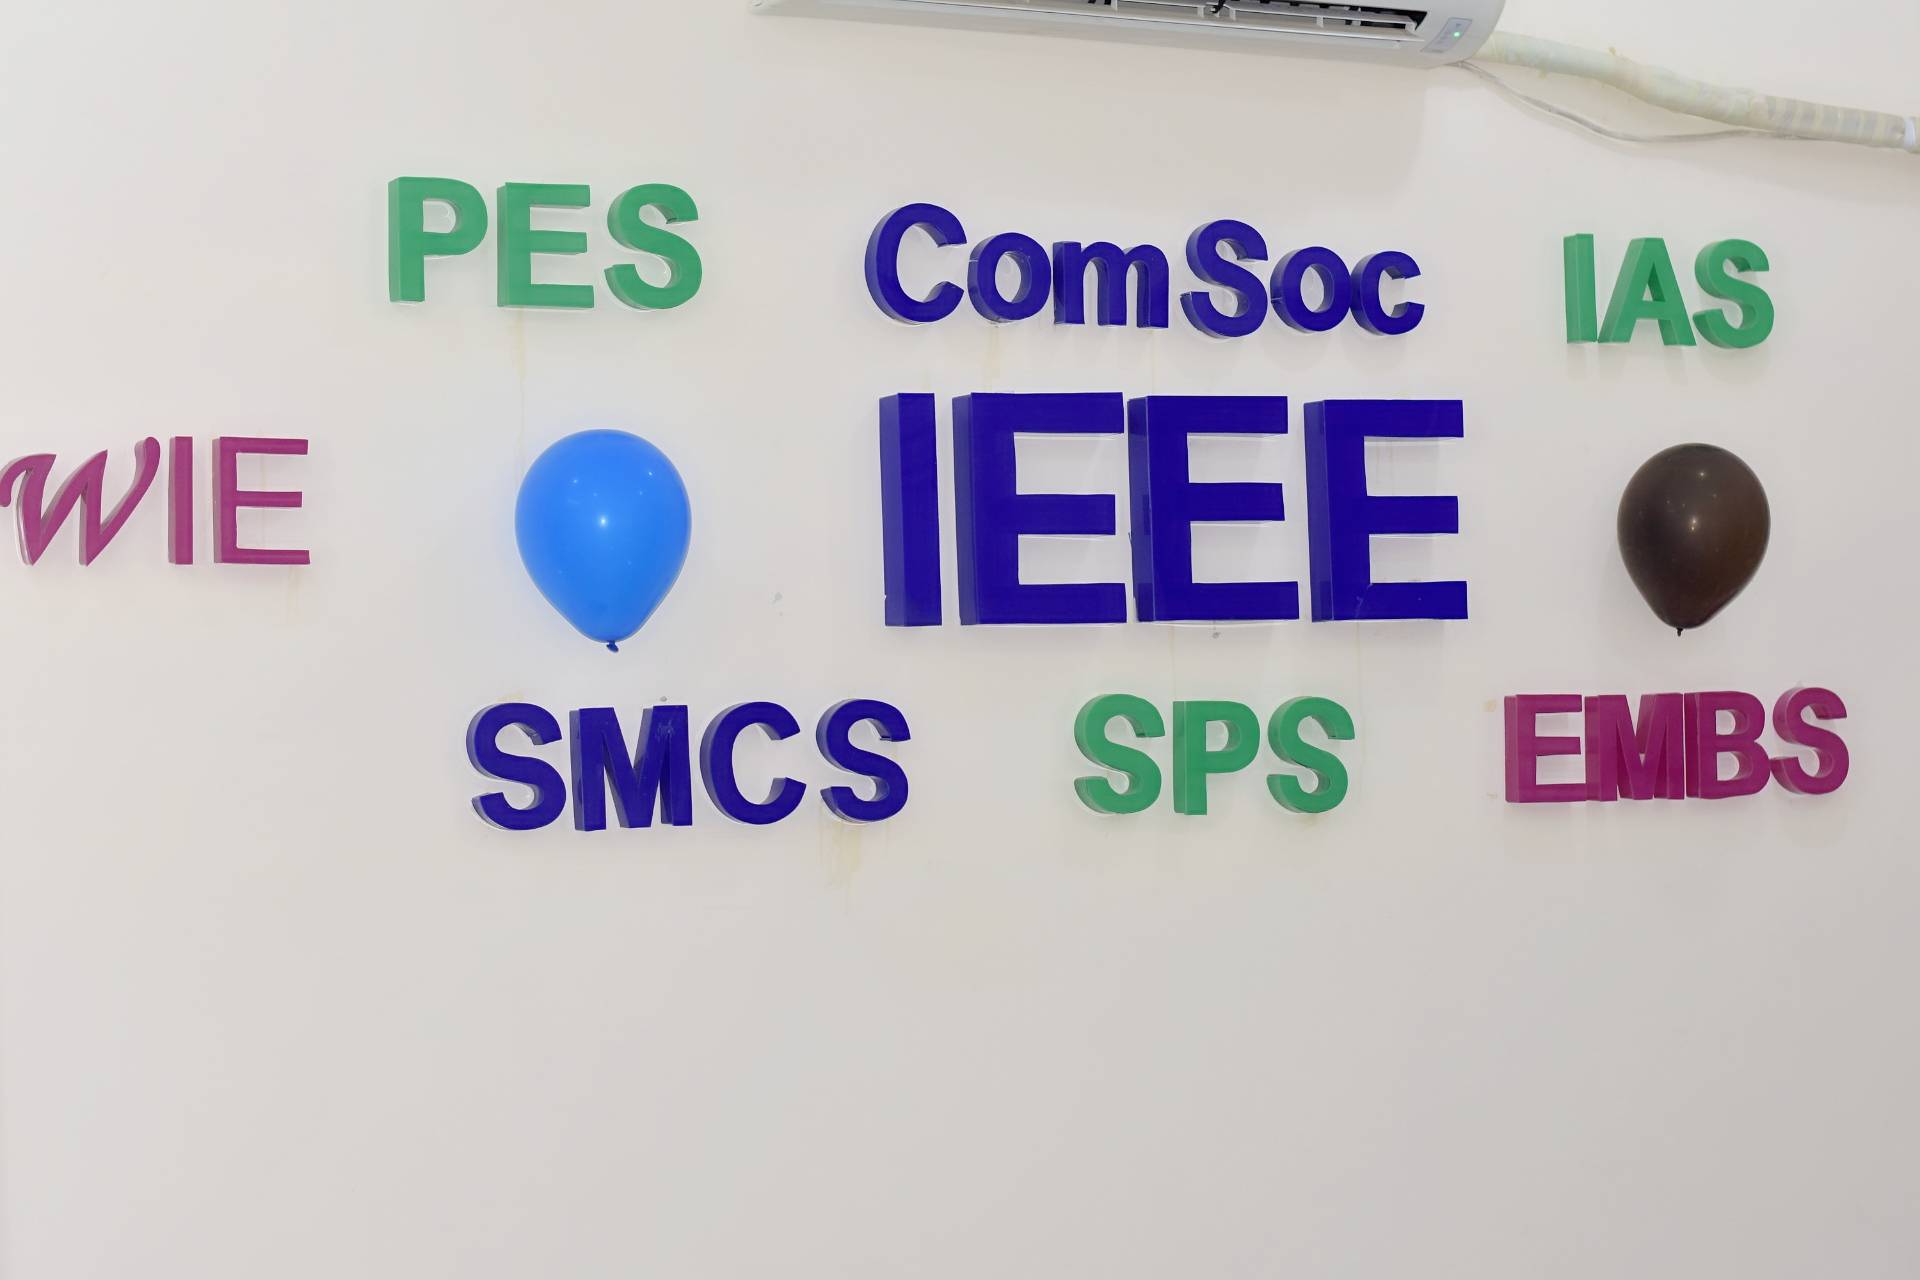 IEEE UCET IUB Student Branch